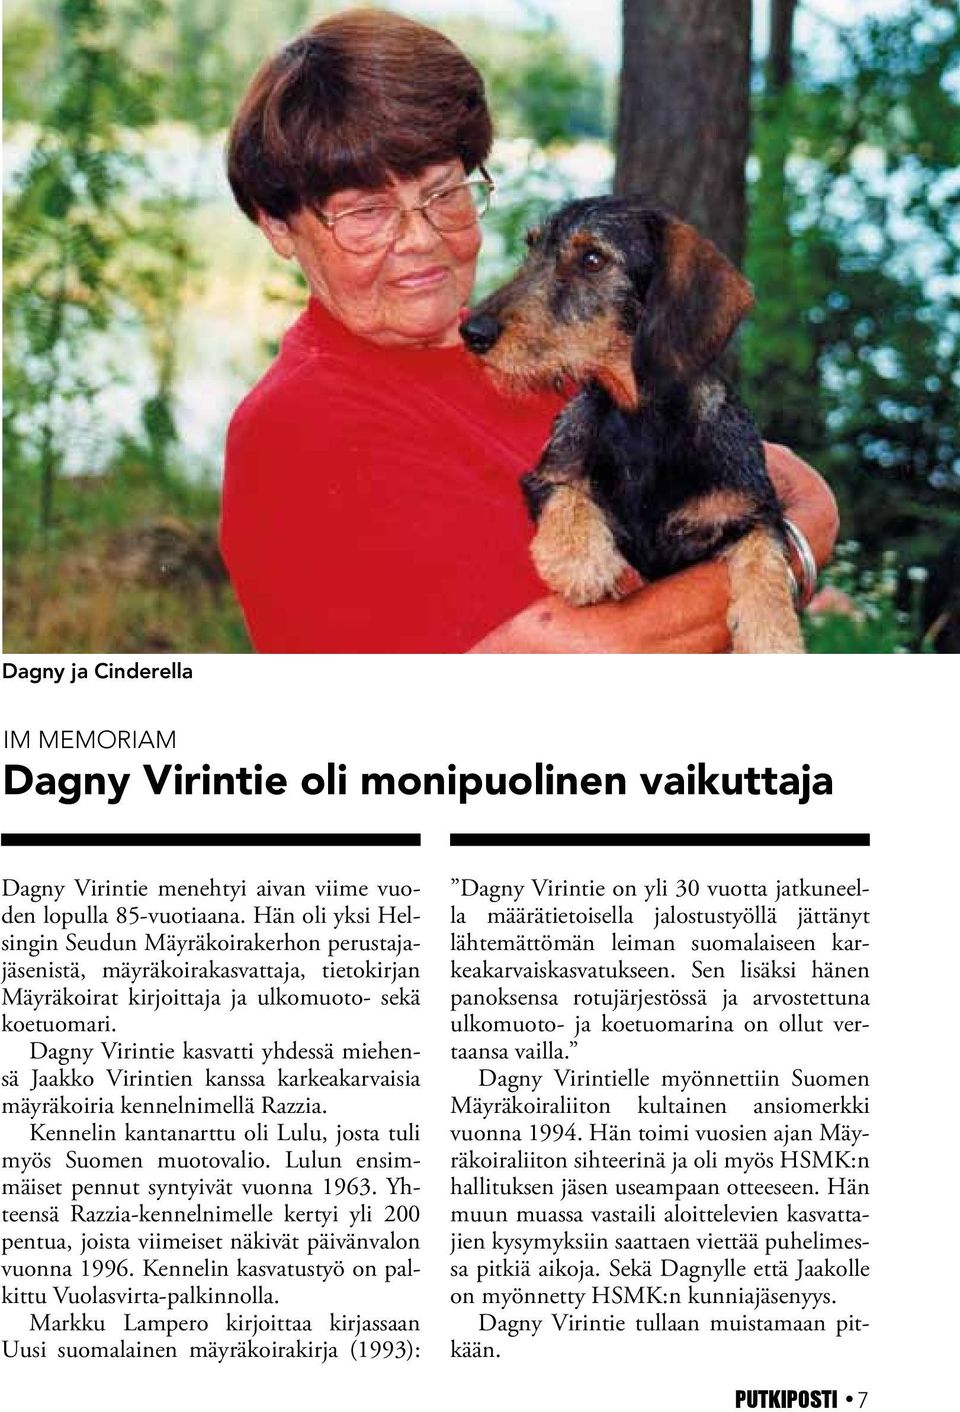 Dagny Virintie kasvatti yhdessä miehensä Jaakko Virintien kanssa karkeakarvaisia mäyräkoiria kennelnimellä Razzia. Kennelin kantanarttu oli Lulu, josta tuli myös Suomen muotovalio.